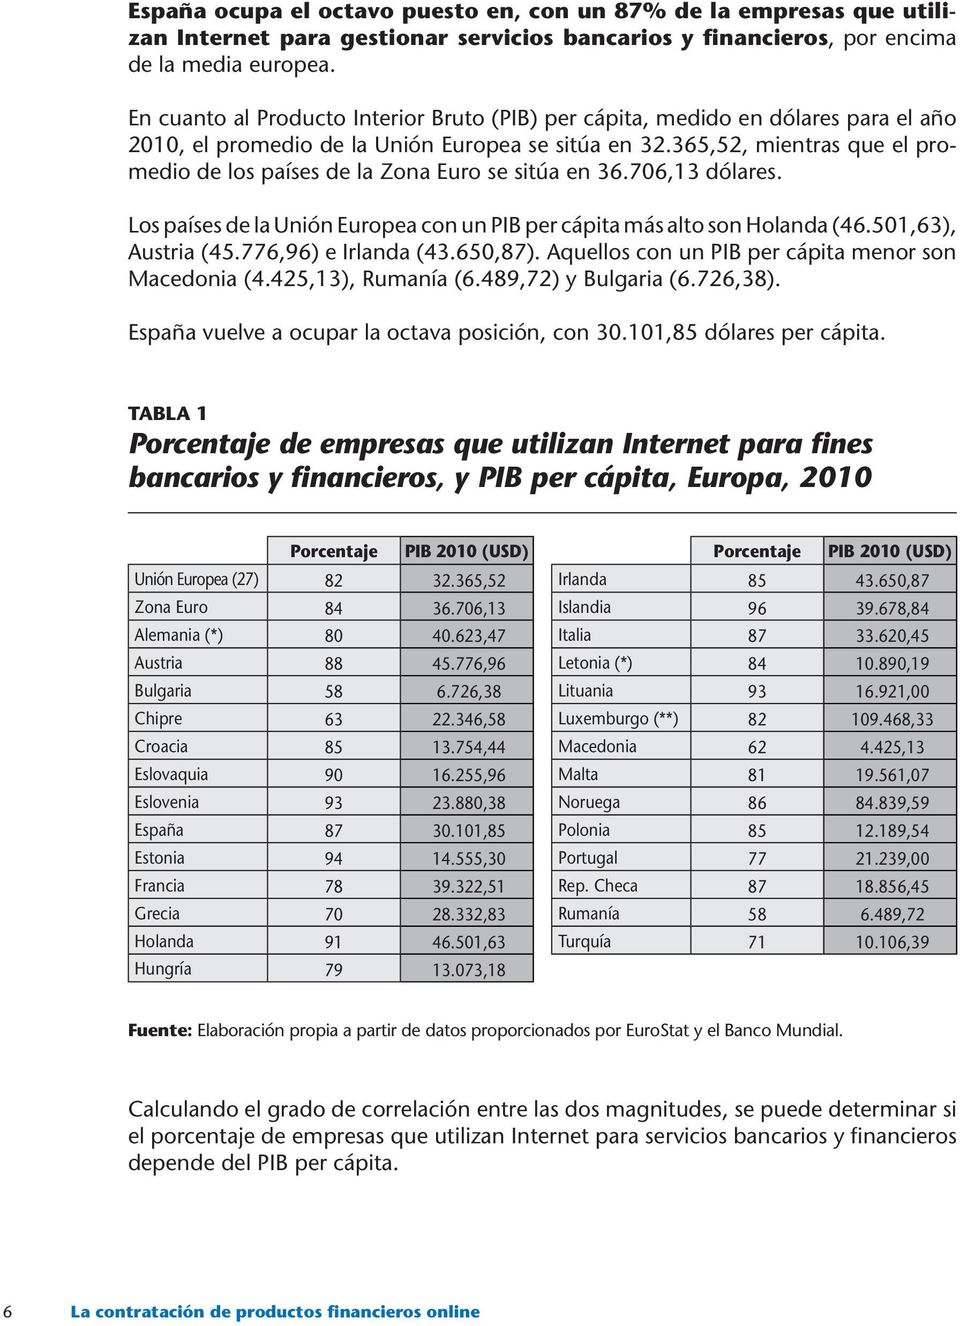 365,52, mientras que el promedio de los países de la Zona Euro se sitúa en 36.706,13 dólares. Los países de la Unión Europea con un PIB per cápita más alto son Holanda (46.501,63), Austria (45.